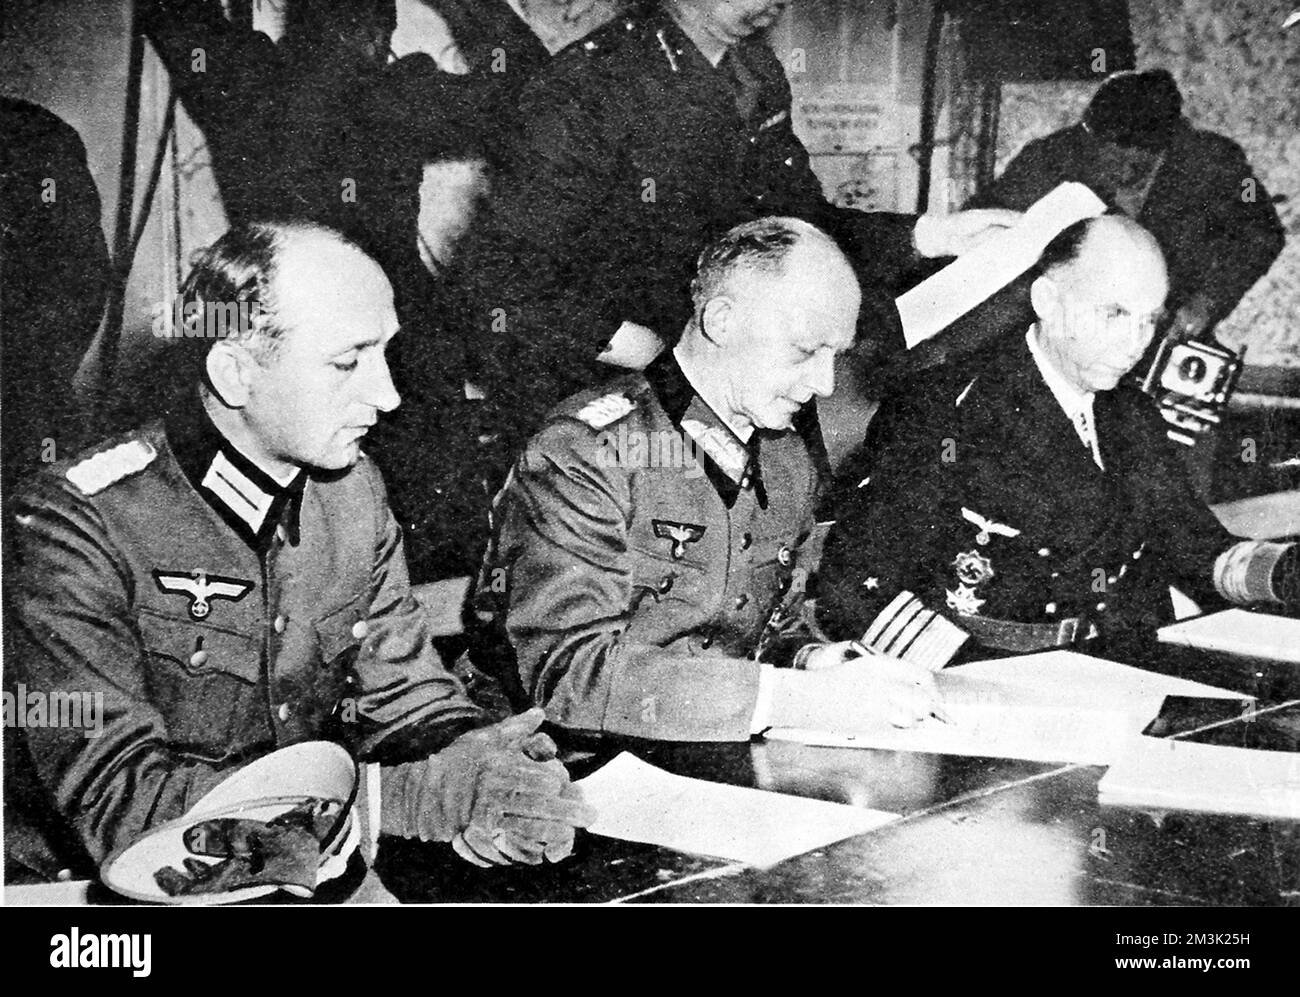 Fotografia che mostra il generale Gustav Jodl (centro), il capo di stato maggiore nazista, firmando la resa incondizionata della Germania, ponendo fine alla seconda guerra mondiale in Europa. Questa consegna si è svolta presso la Suprema sede della forza d'espeditionio alleata a Reims in Francia il 7th maggio 1945. Data: 1945 Foto Stock